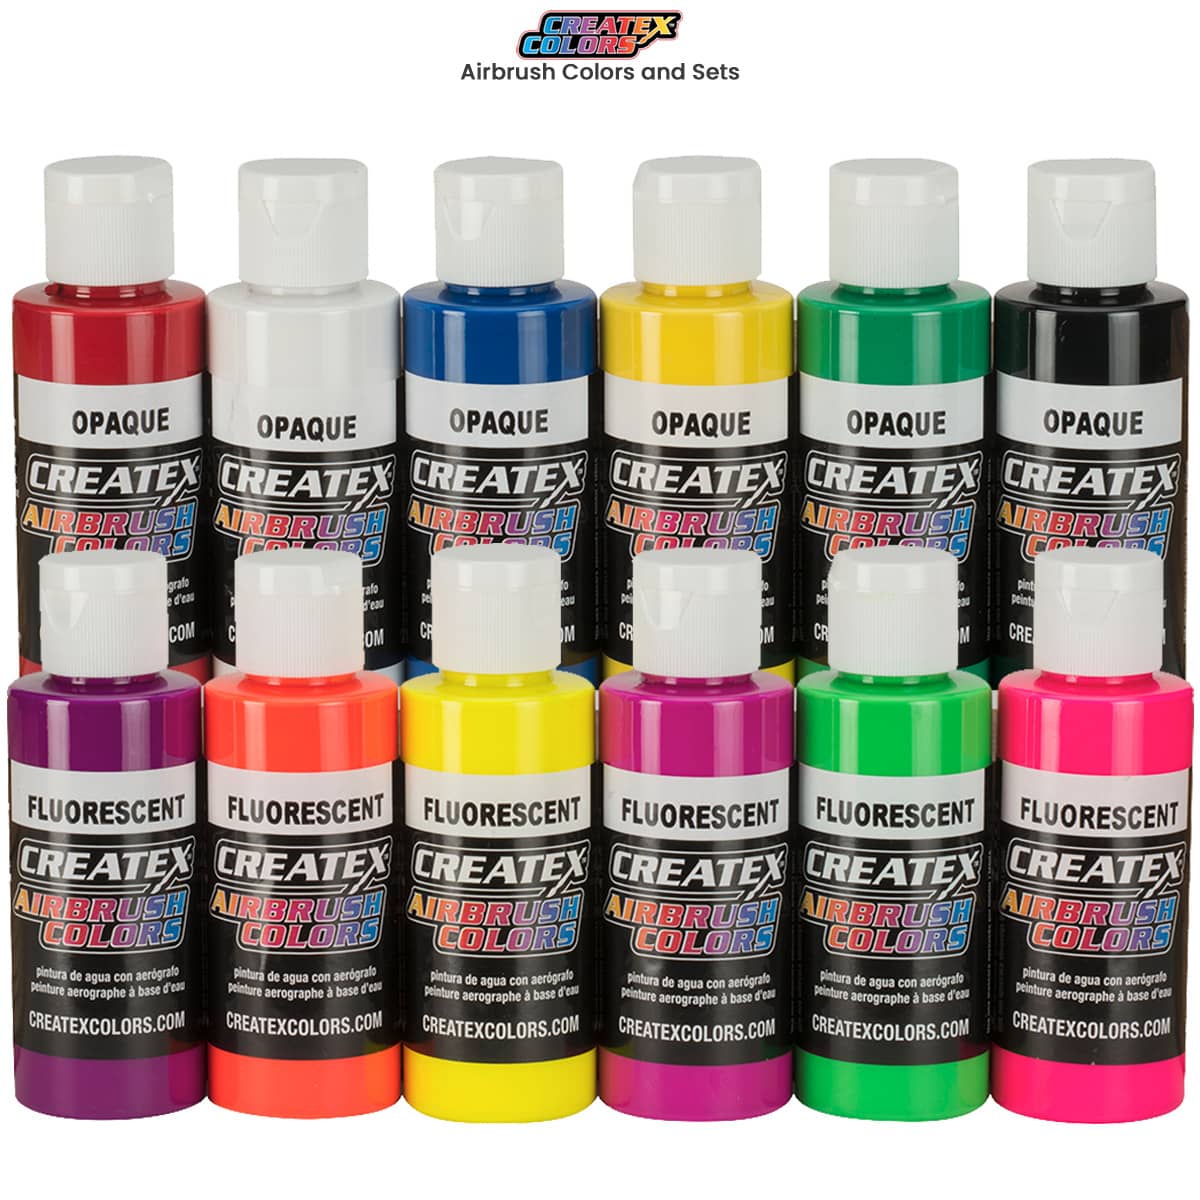 Chroma Polyurethane Airbrush Paints and Sets